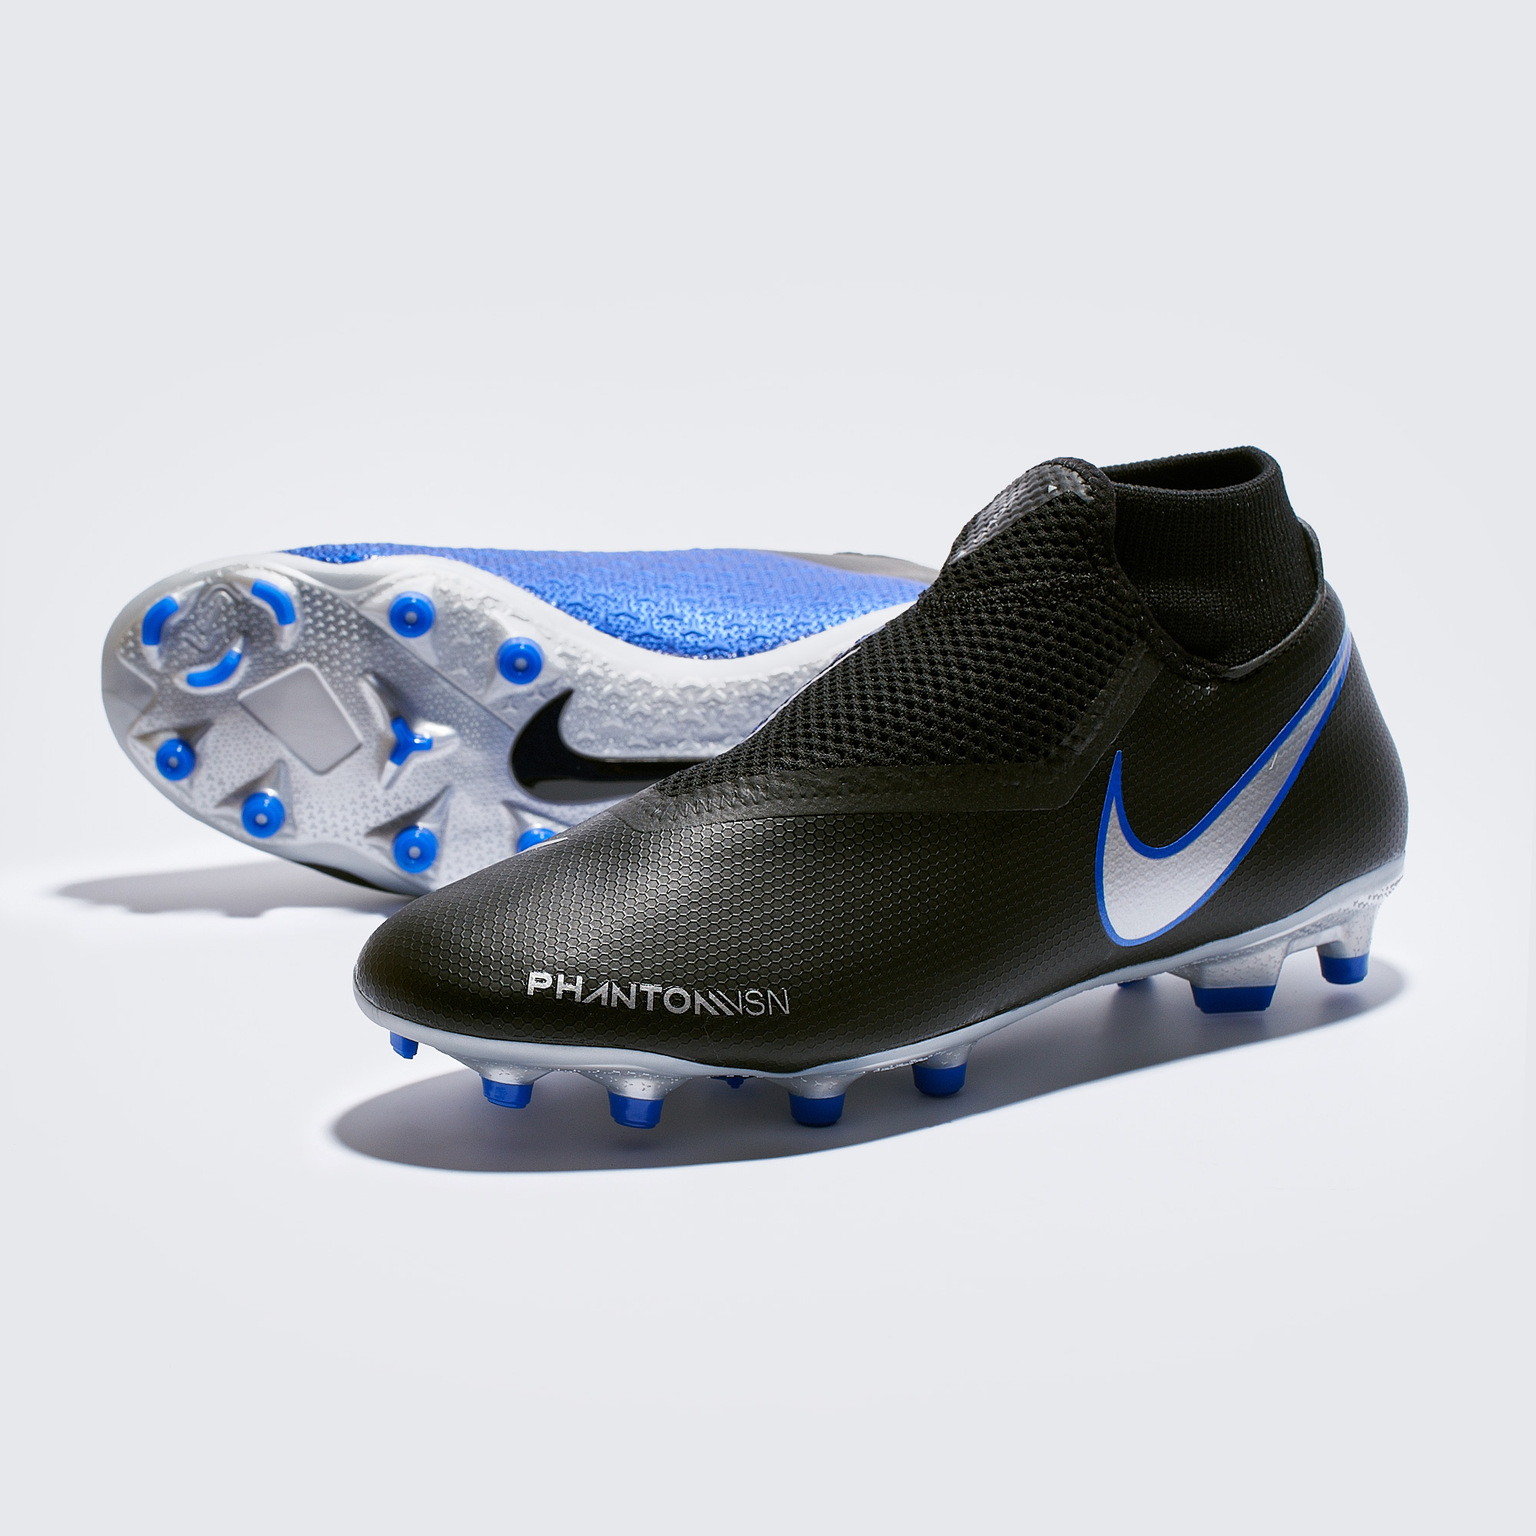 Médula ósea Honestidad Aliado Бутсы Nike Phantom 3 Academy DF MG AO3258-004 – купить бутсы в интернет  магазине Footballstore, цена, фото, отзывы